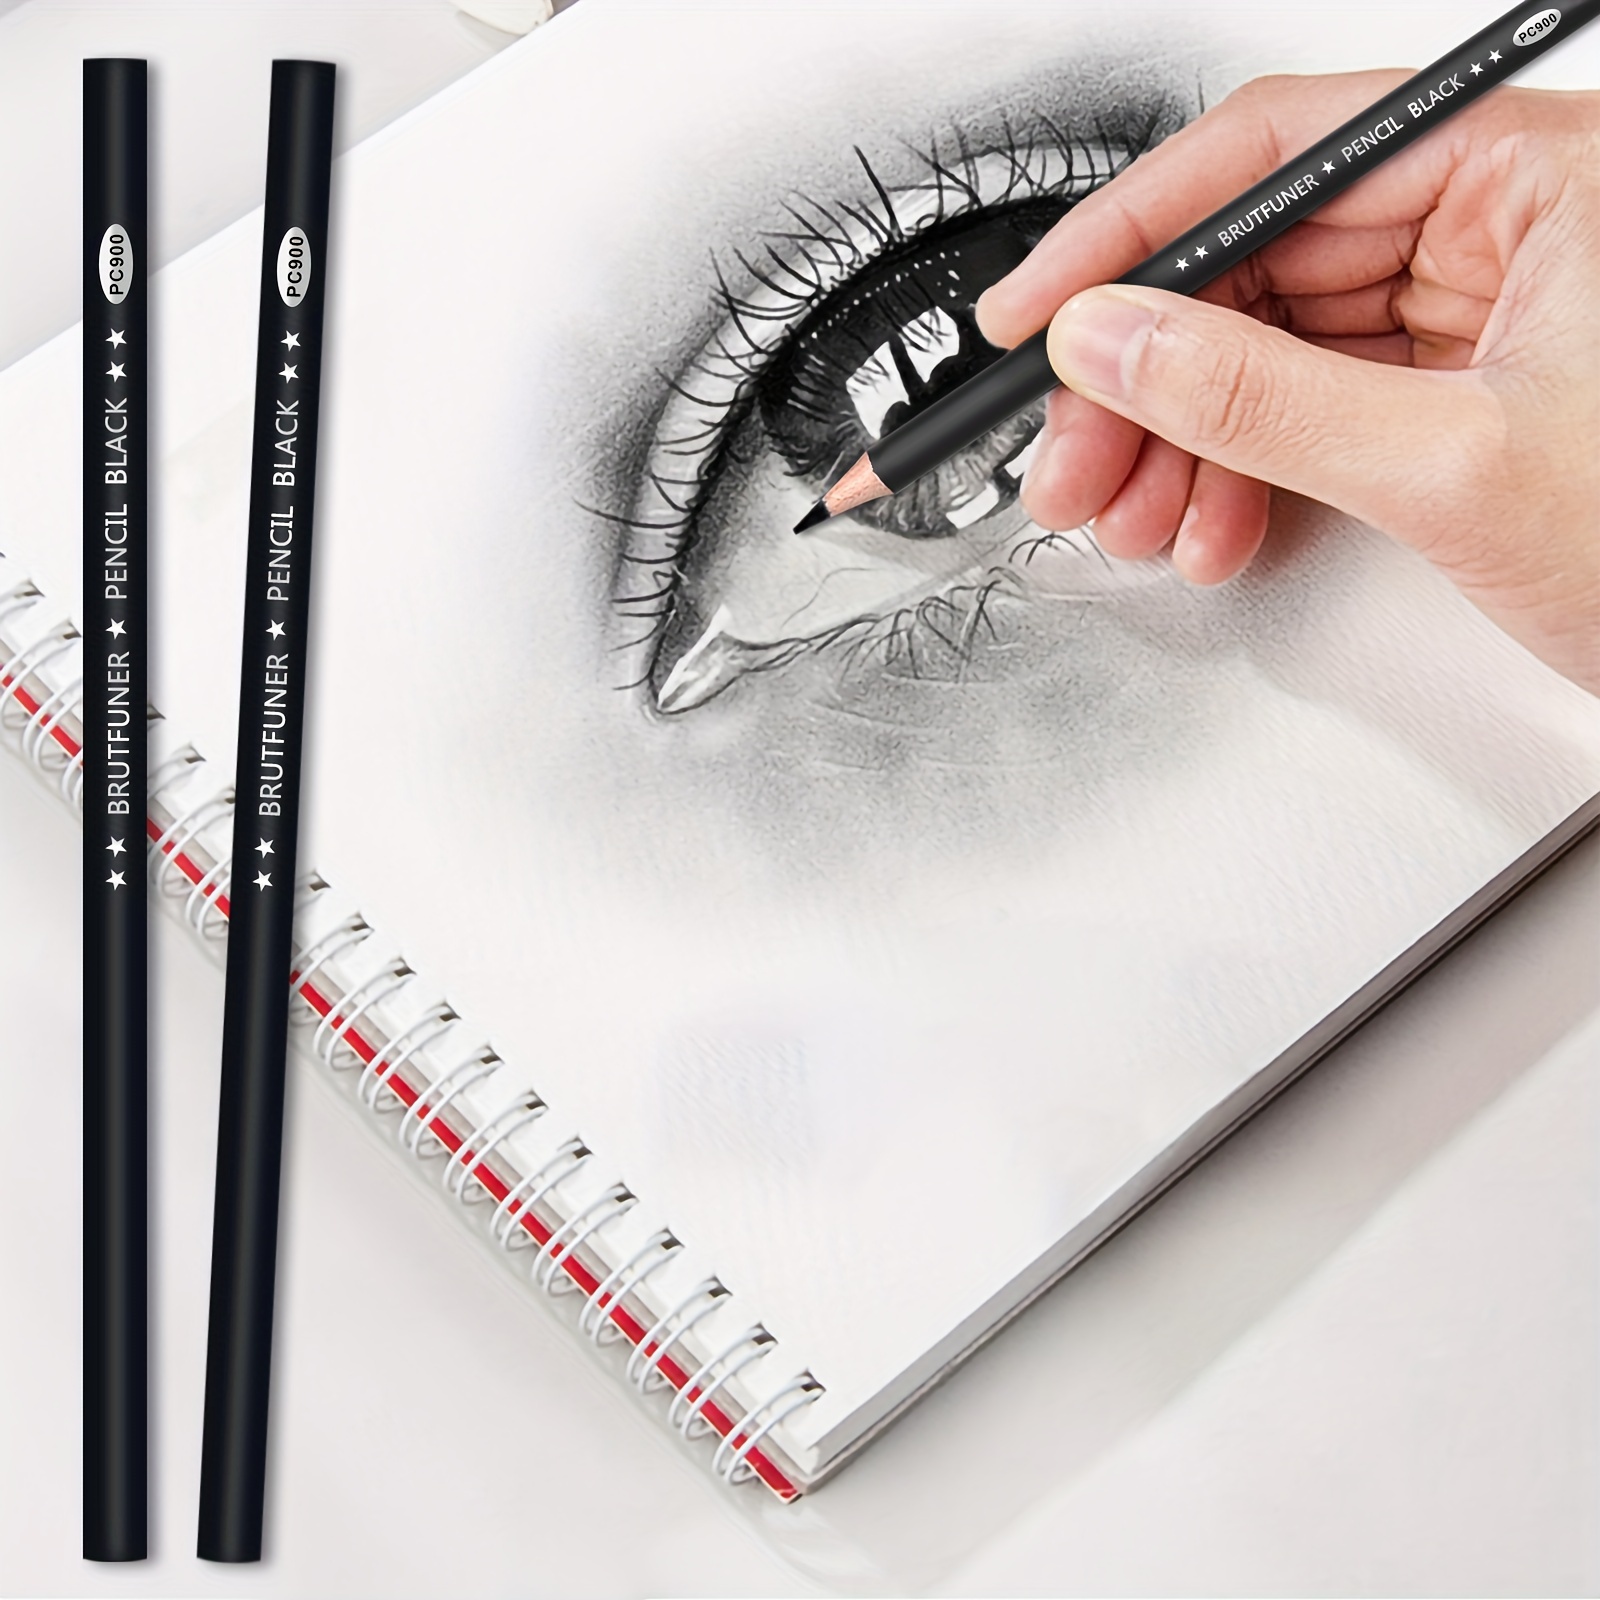 22Pcs Professional Sketch Pencils+Charcoal Pencils Art Supplies Set for  Artists